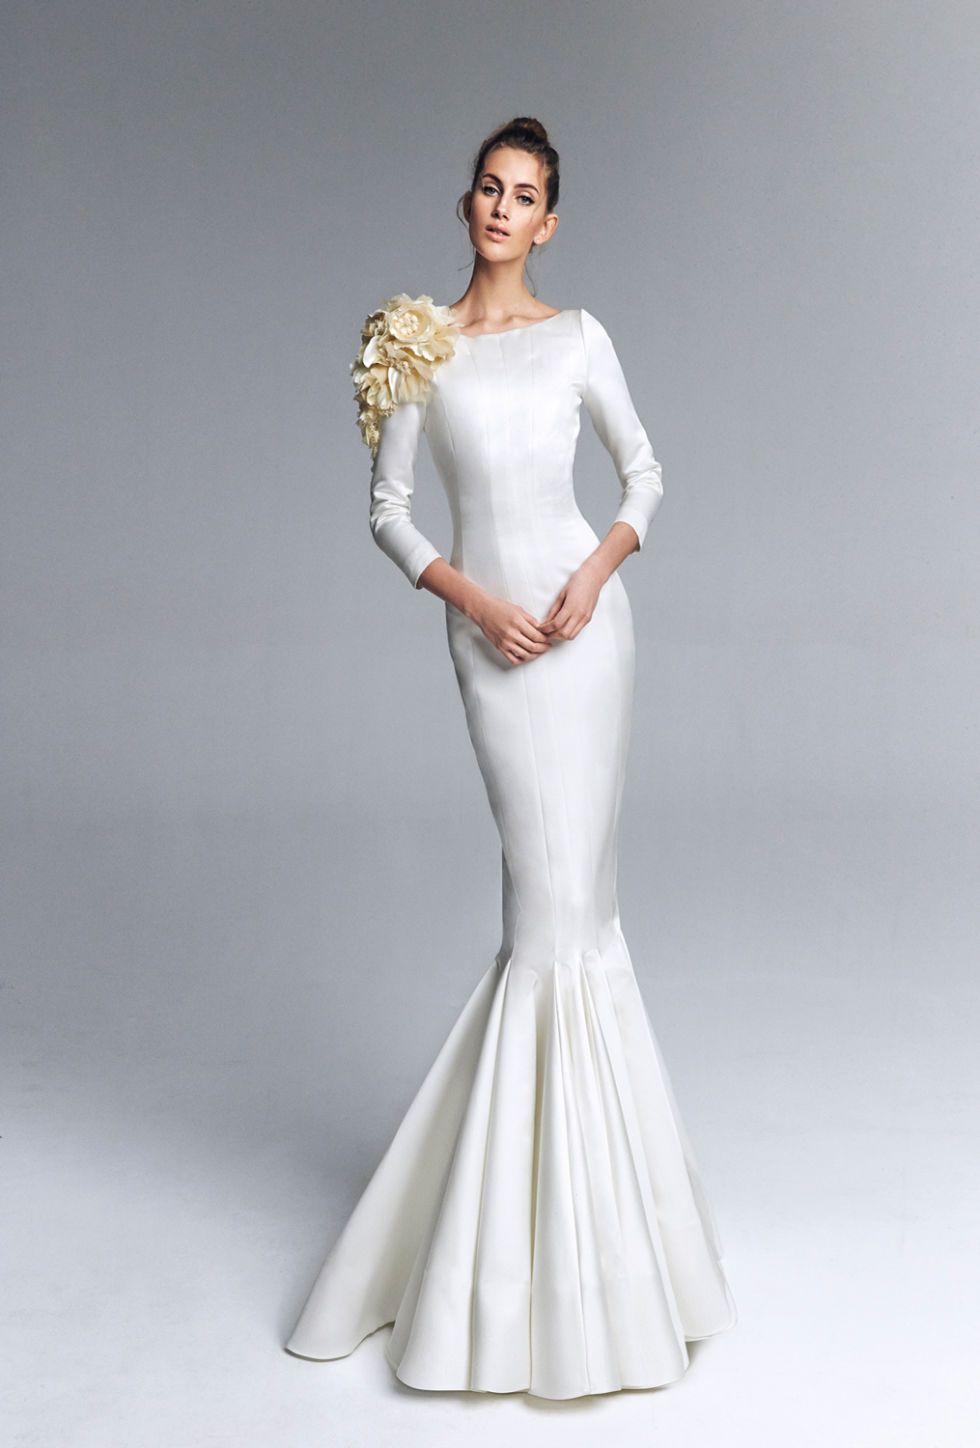 Gown, Fashion model, Clothing, Dress, Wedding dress, Shoulder, Bridal party dress, Bridal clothing, Bride, Fashion, 